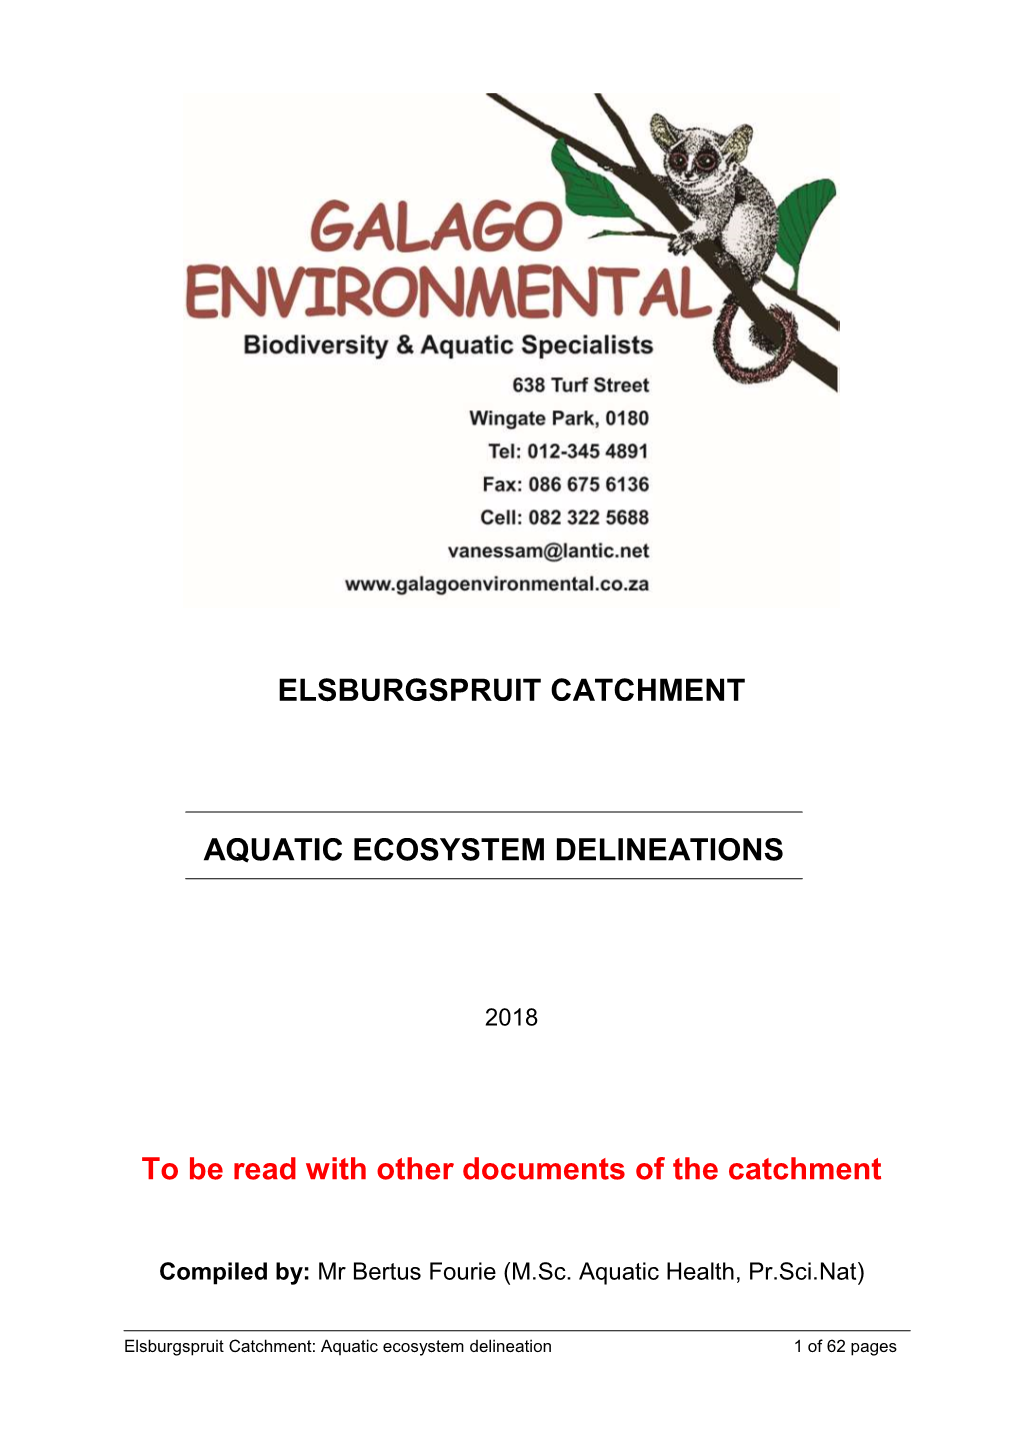 Elsburgspruit Catchment Aquatic Ecosystem